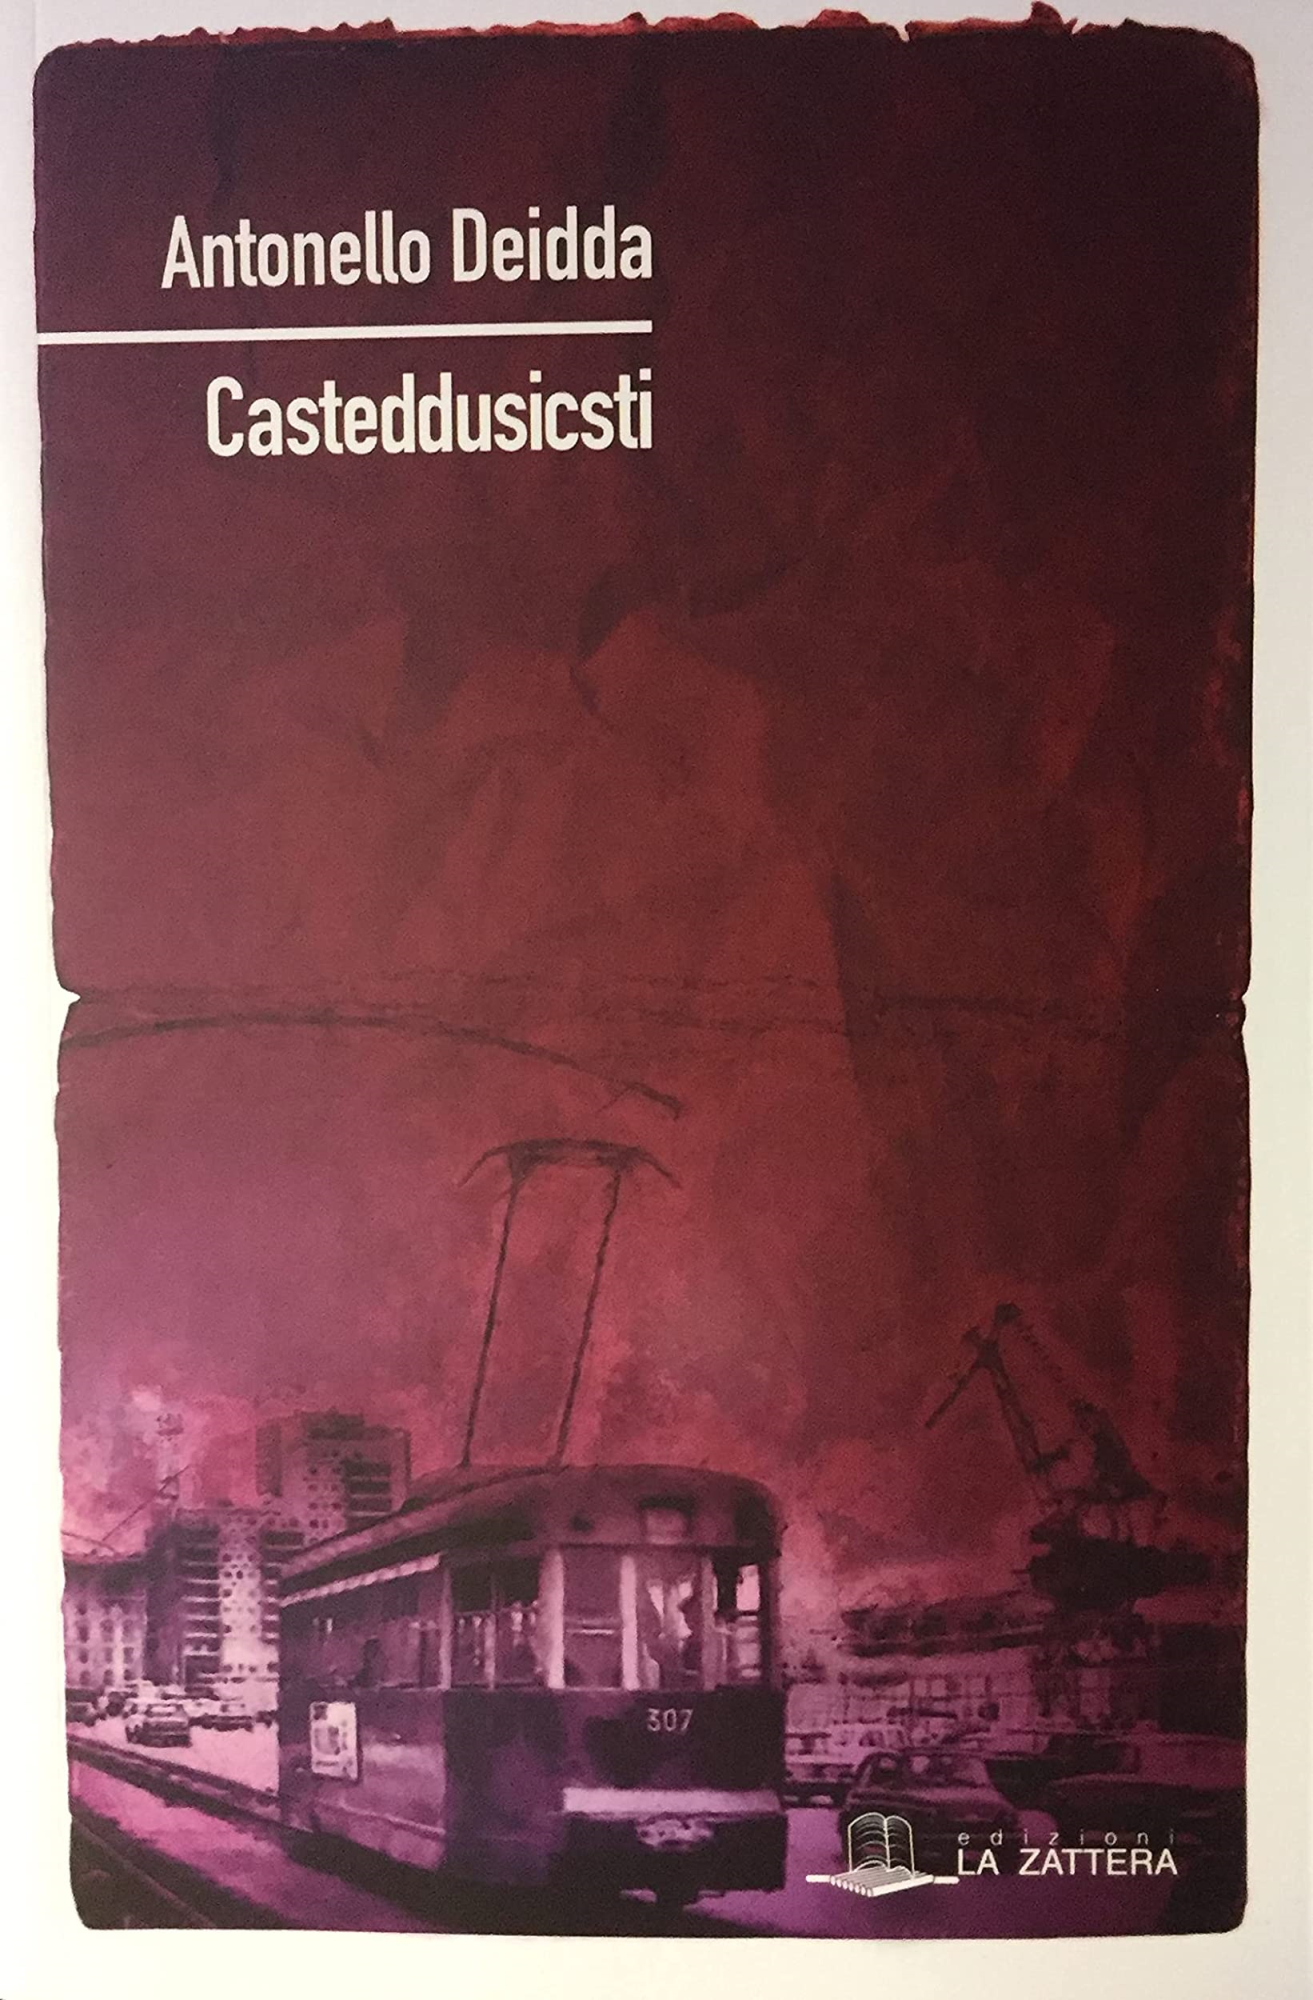 Libri Antonello Deidda - Casteddusicsti NUOVO SIGILLATO SUBITO DISPONIBILE